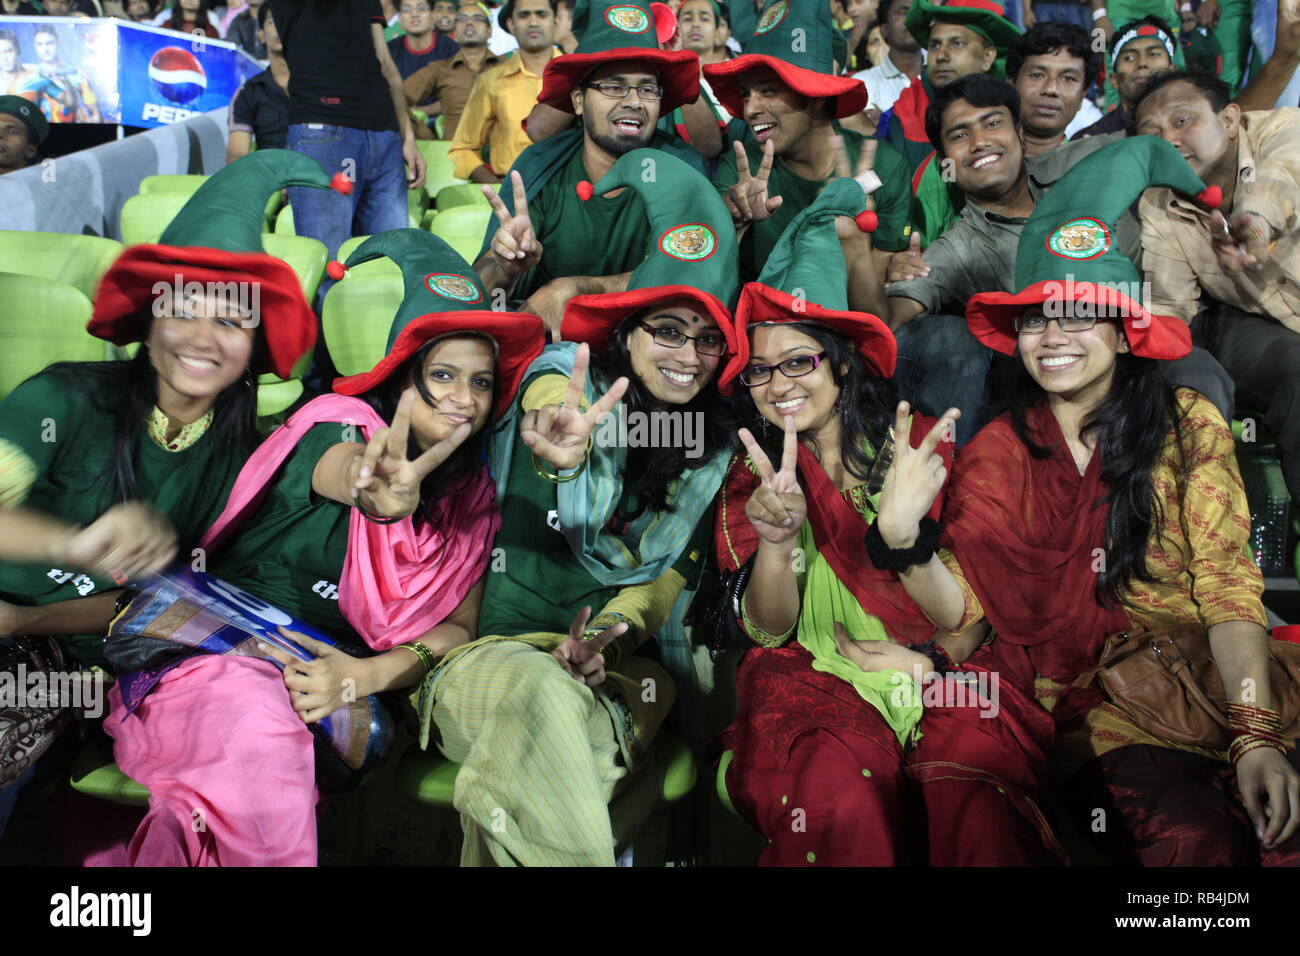 Le Bangladesh fans flash le V-sign au cours de l'ICC Cricket World Cup 2011 contre l'Irlande à la Sher-e-bangla National Stadium. Dhaka, Bangladesh. Banque D'Images